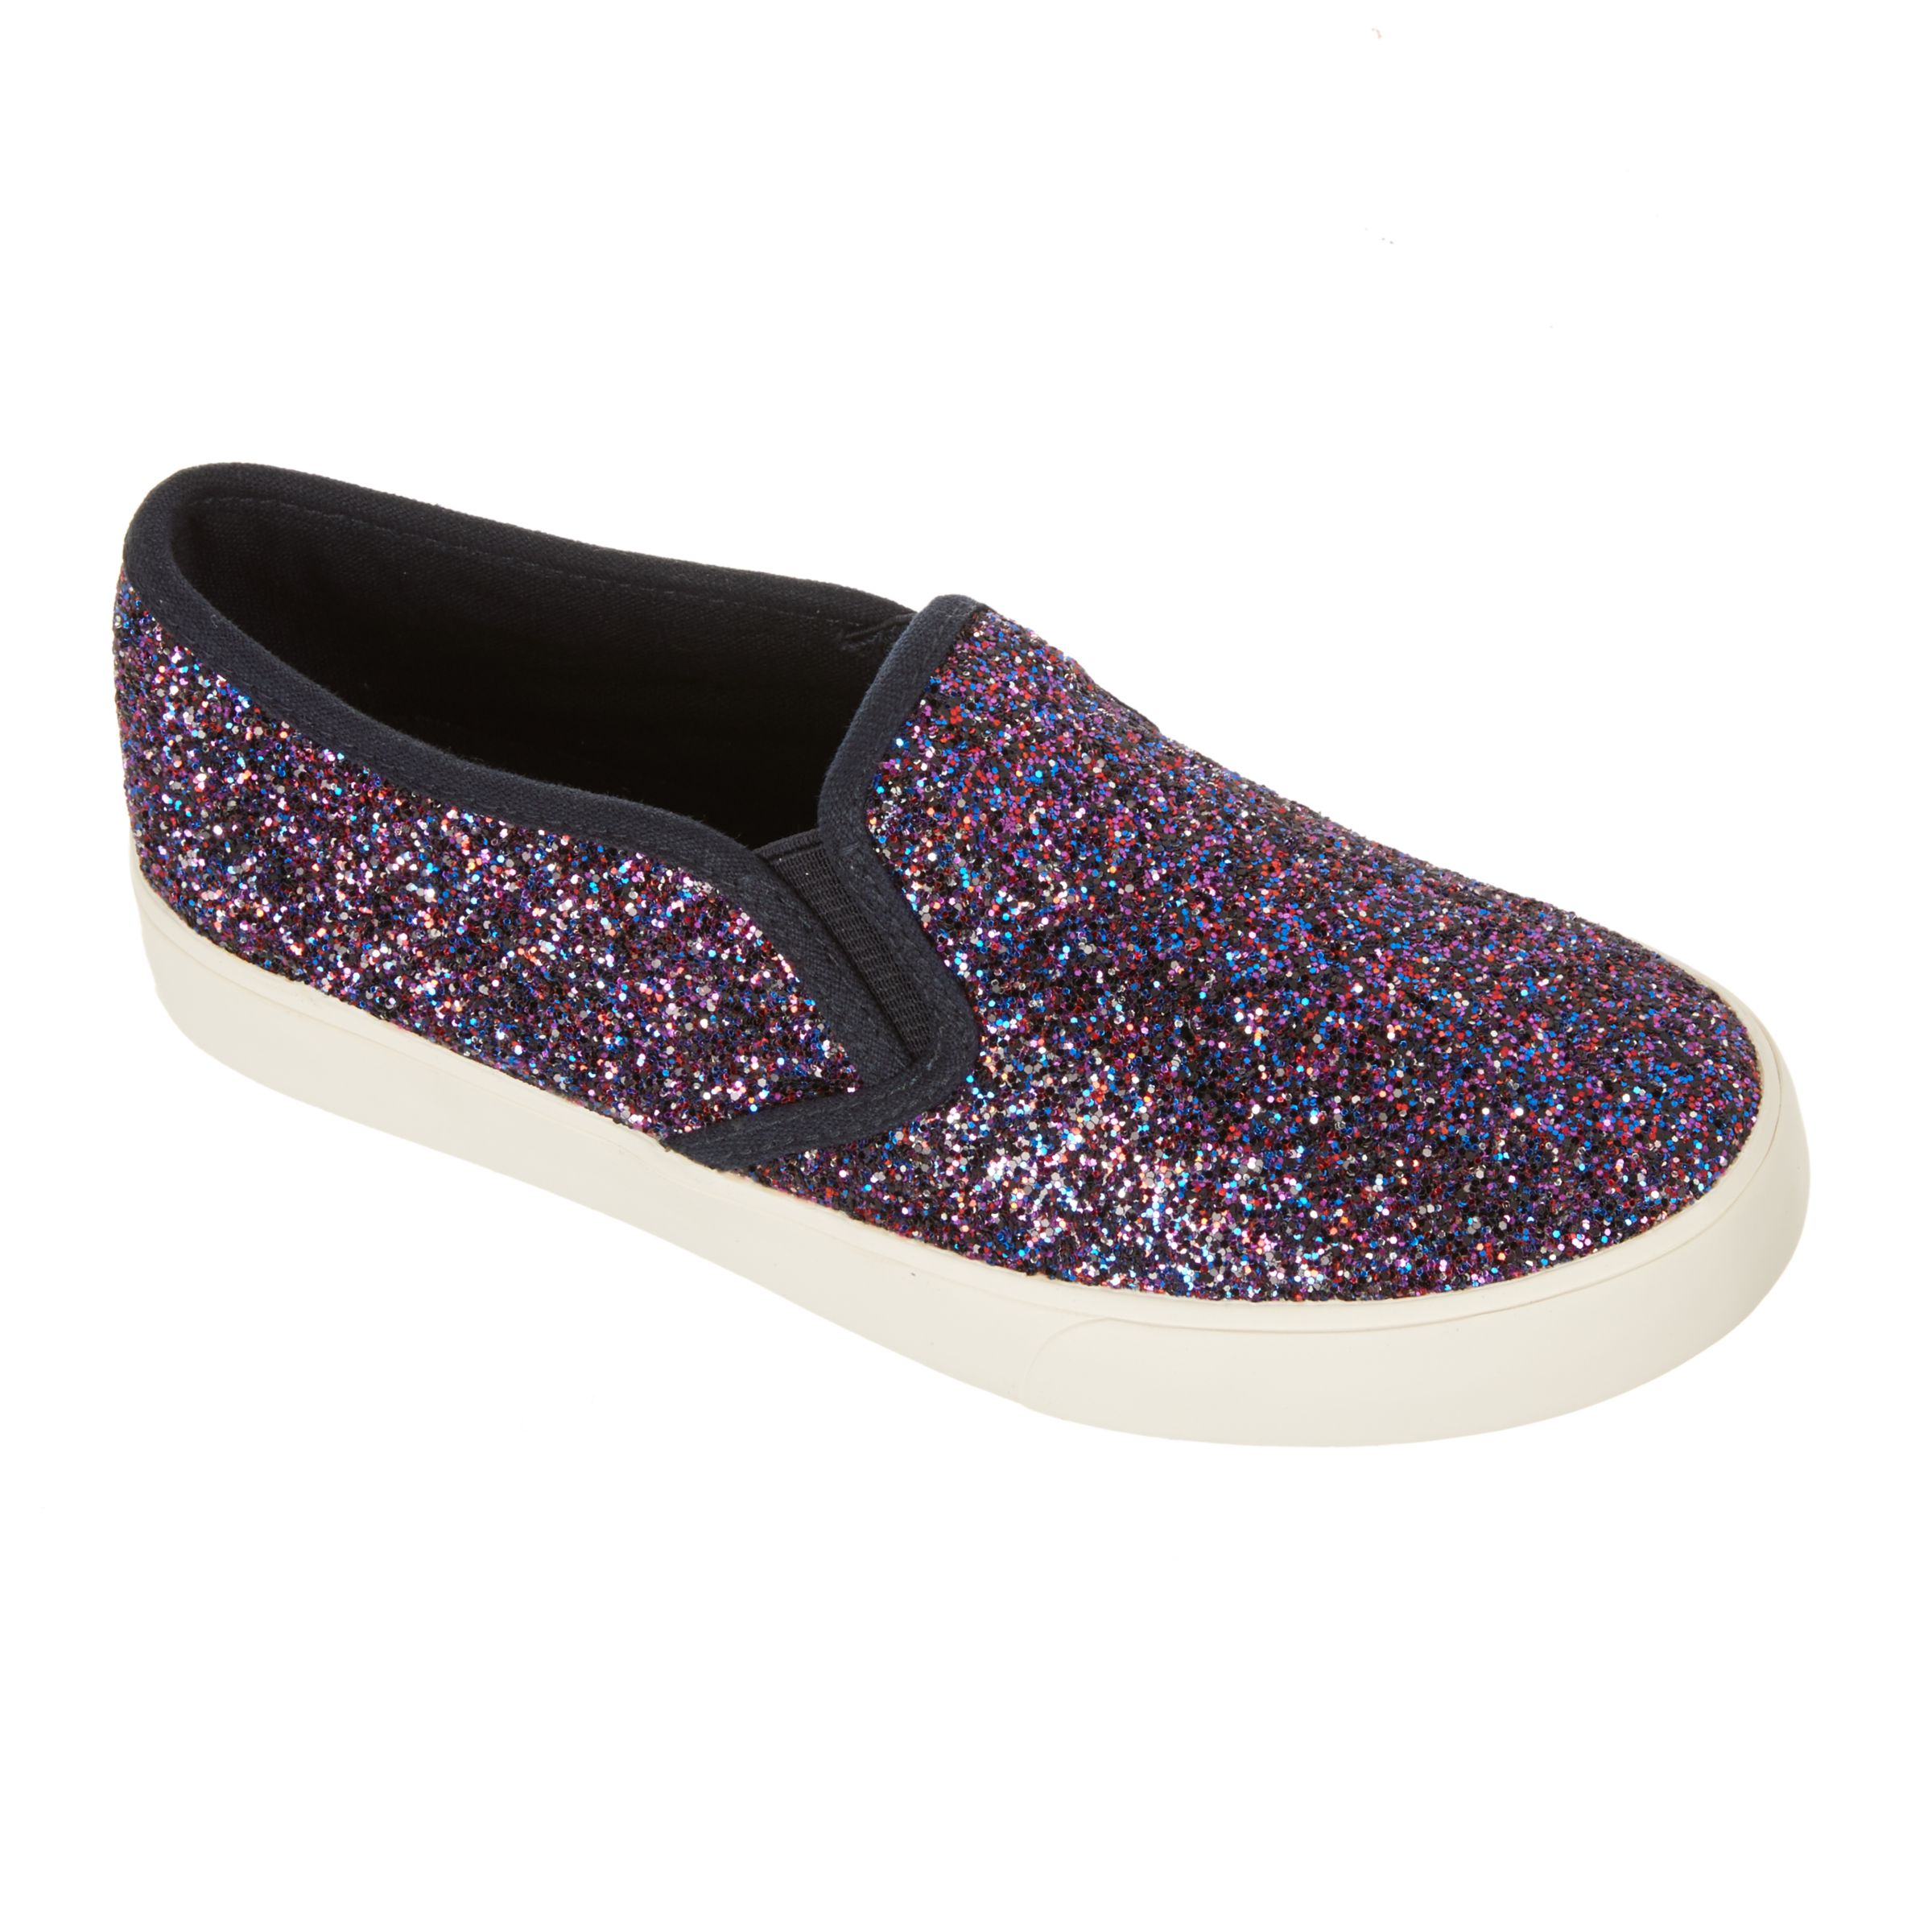 John Lewis & Partners Children's Pheobe Glitter Slip On Shoes, Purple, 9 Jnr